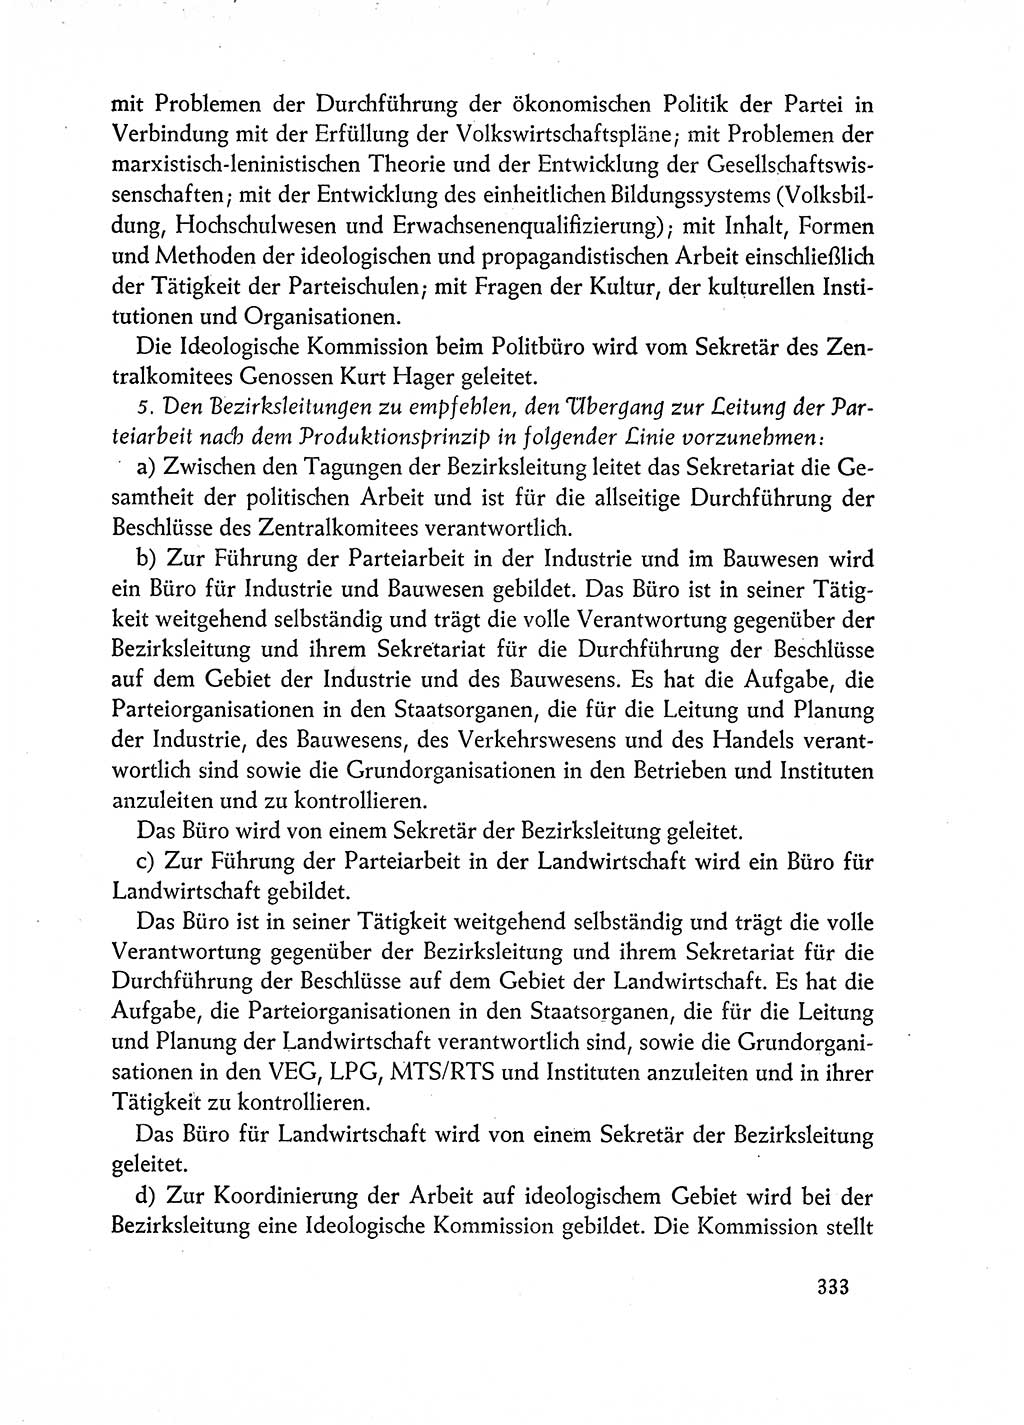 Dokumente der Sozialistischen Einheitspartei Deutschlands (SED) [Deutsche Demokratische Republik (DDR)] 1962-1963, Seite 333 (Dok. SED DDR 1962-1963, S. 333)